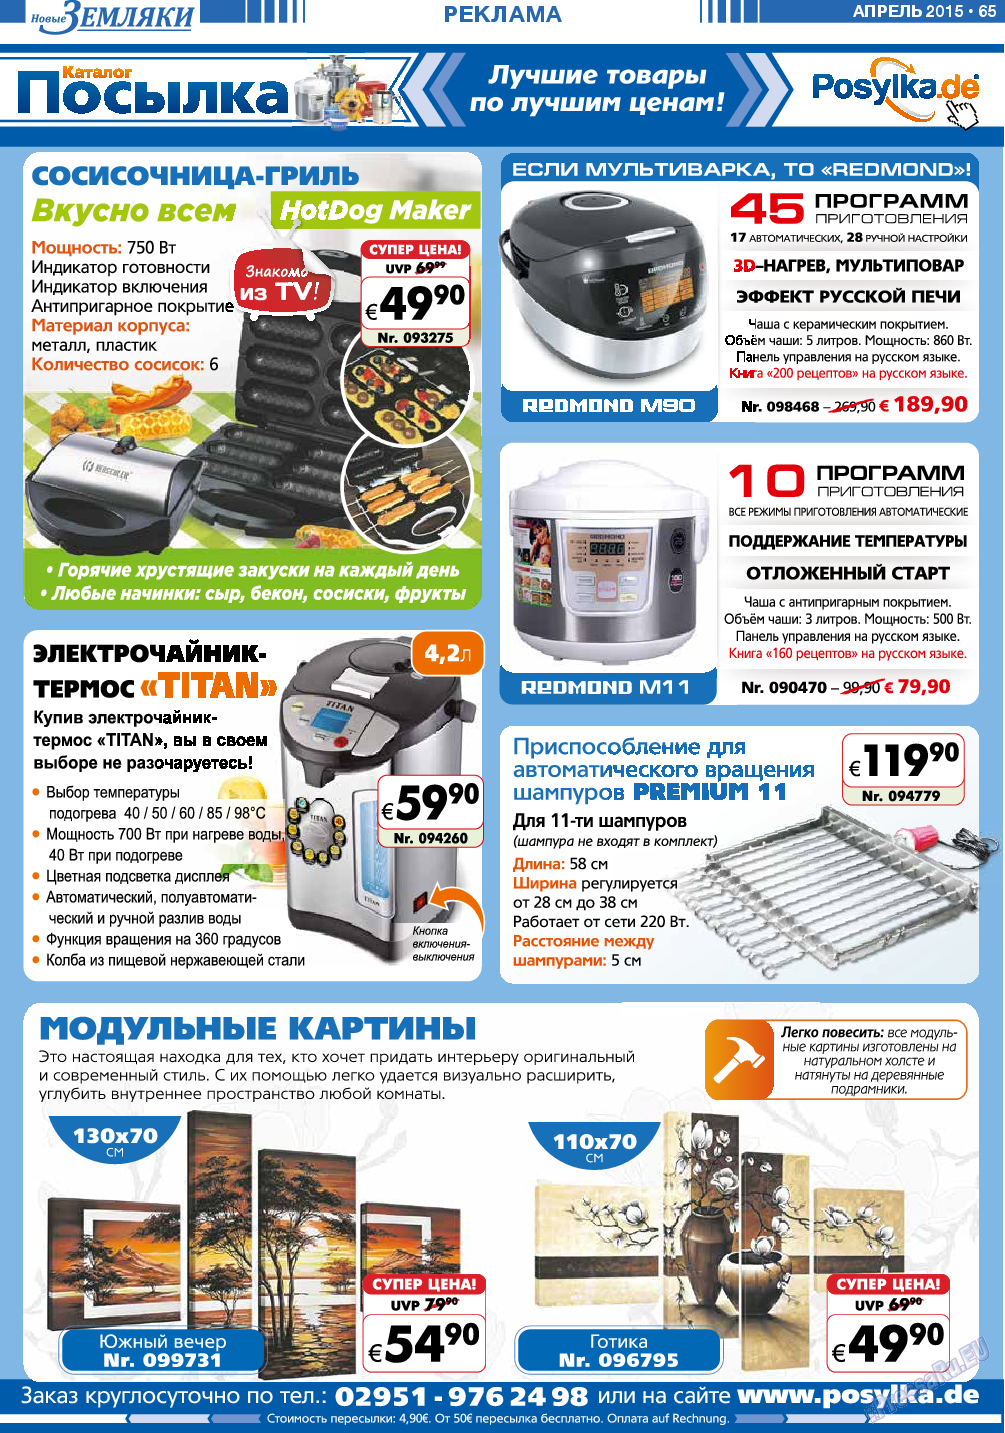 Новые Земляки, газета. 2015 №4 стр.65